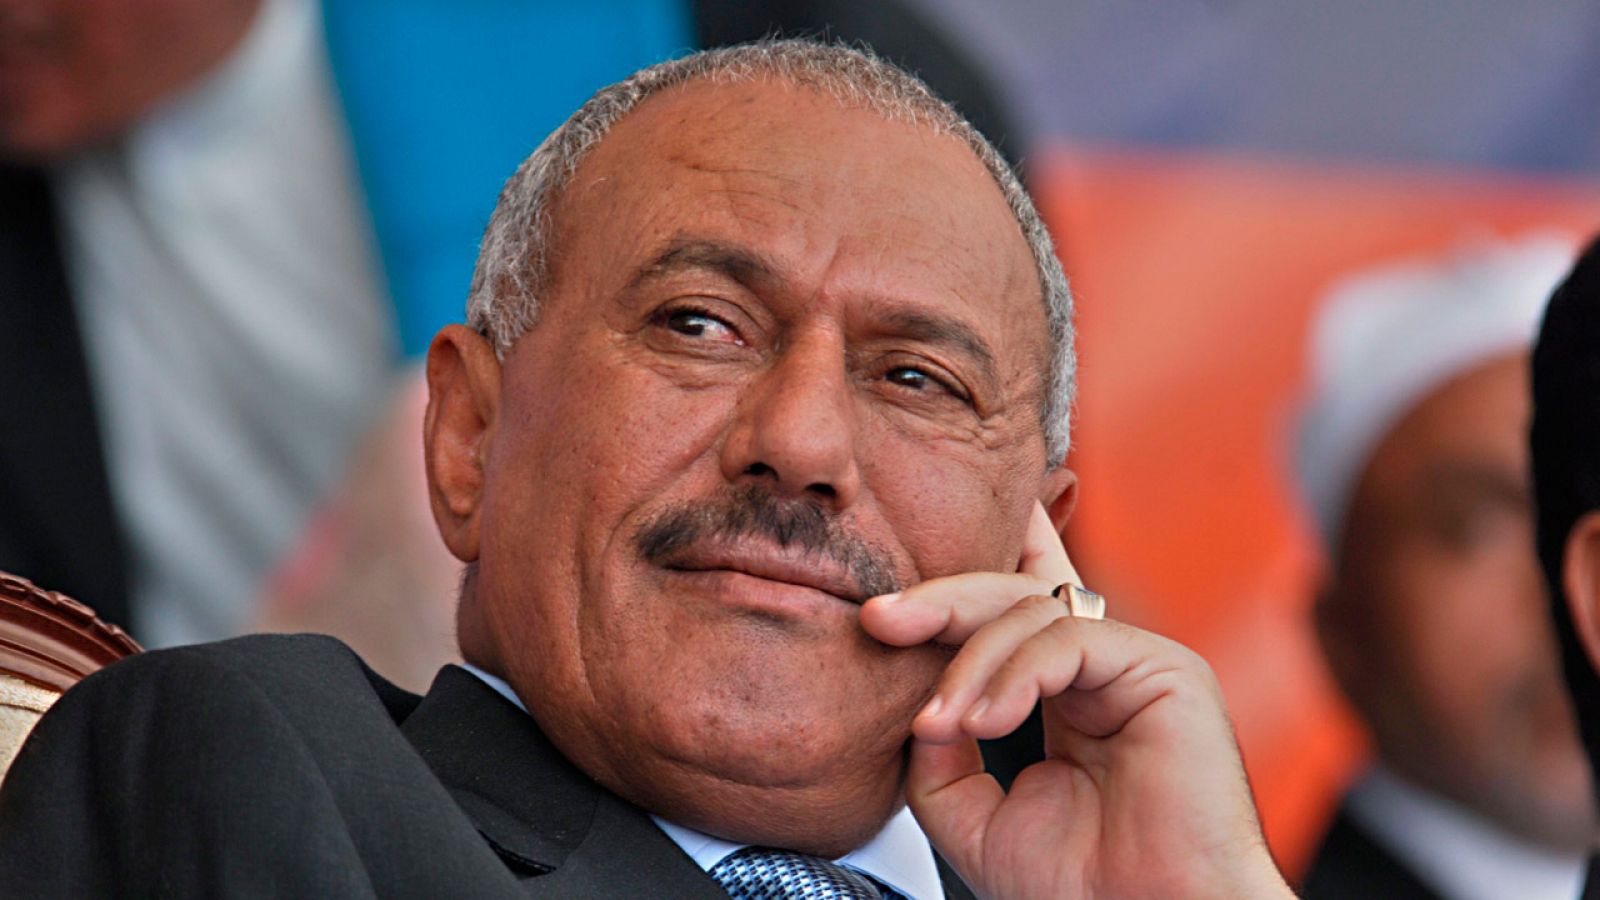 El expresidente yemení Alí Abdalá Saleh, en un acto en Saná en 2011